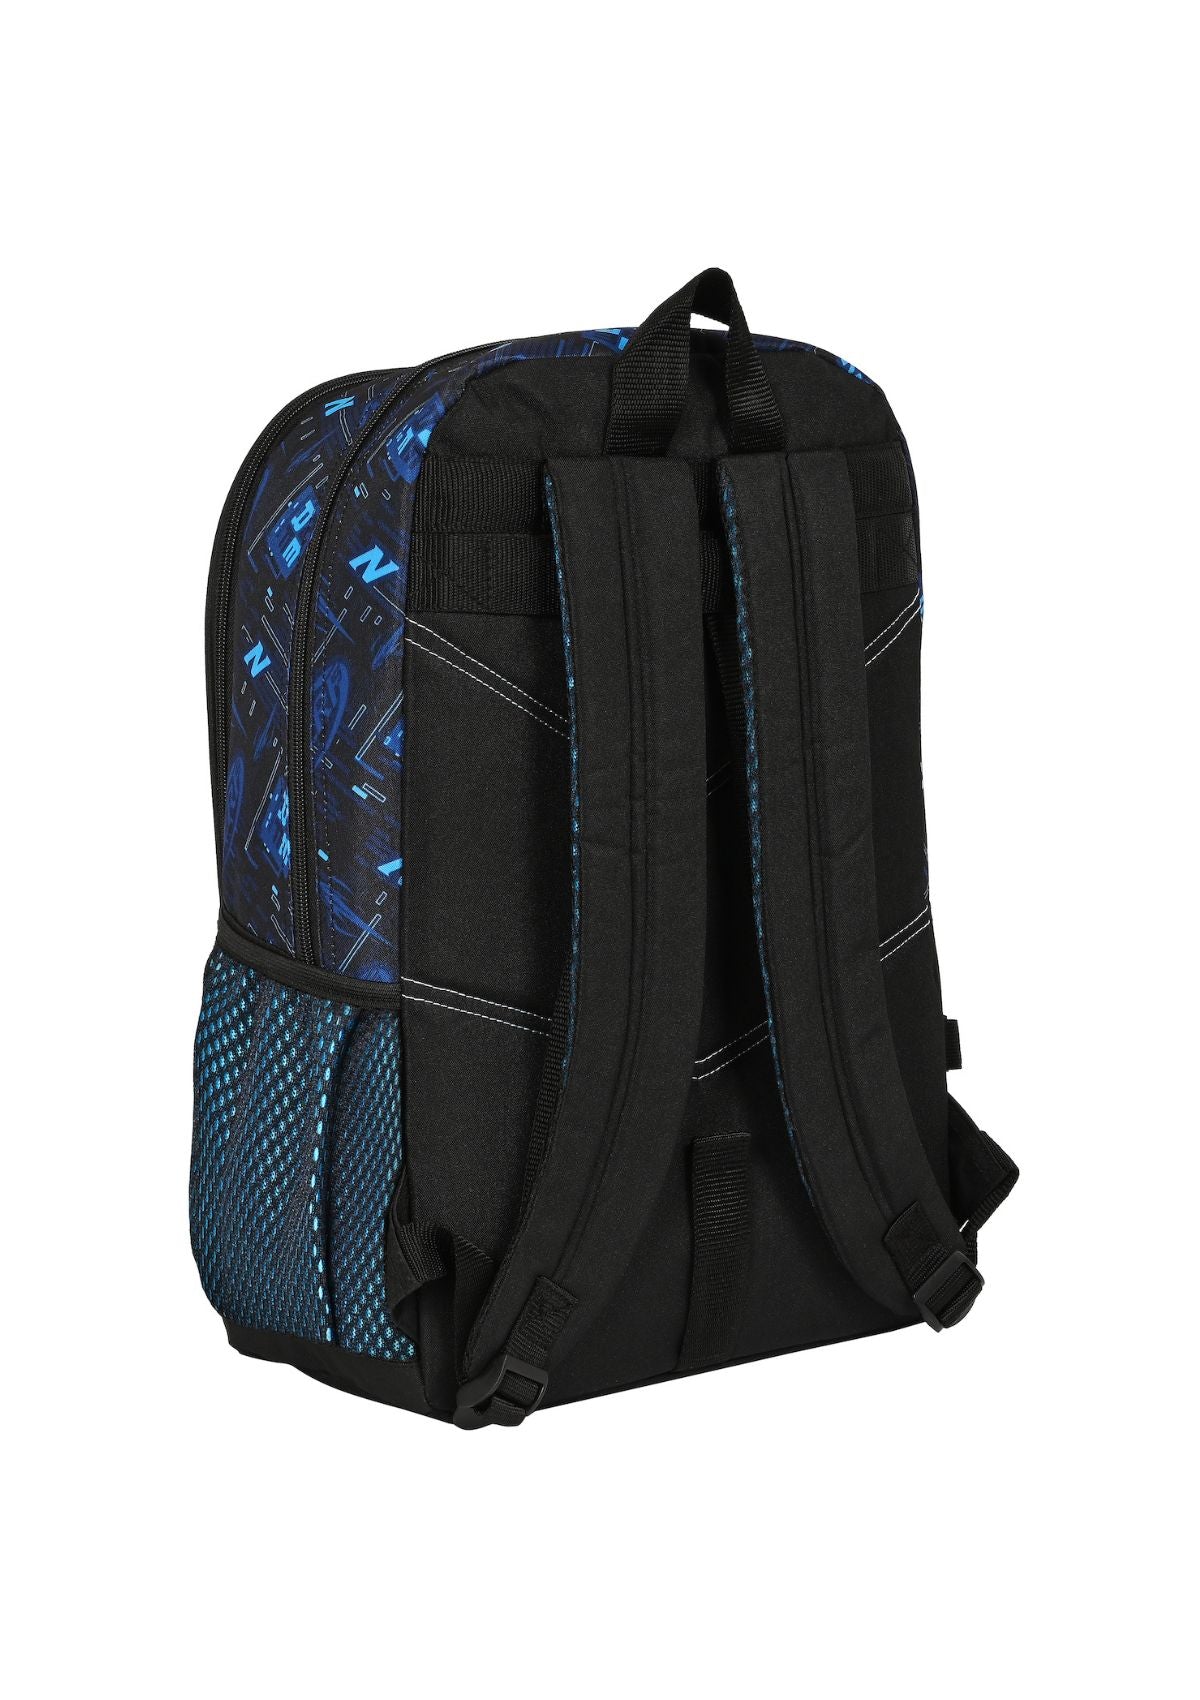 Nerf Large Backpack back